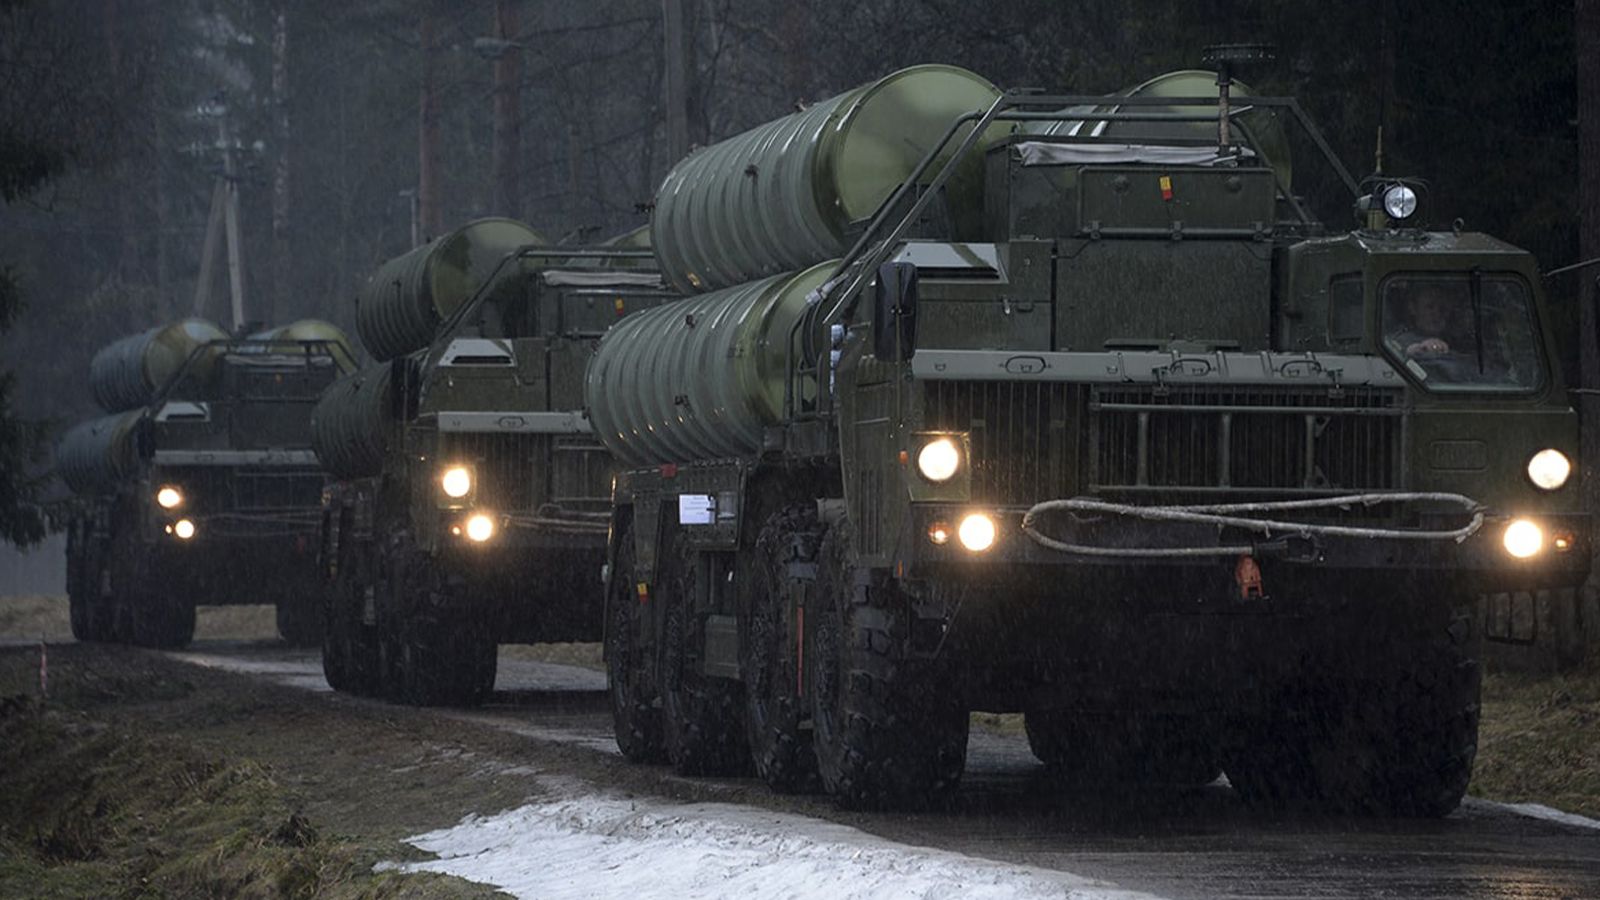 Рогов сообщил о работе средств ПВО в пригороде Мелитополя